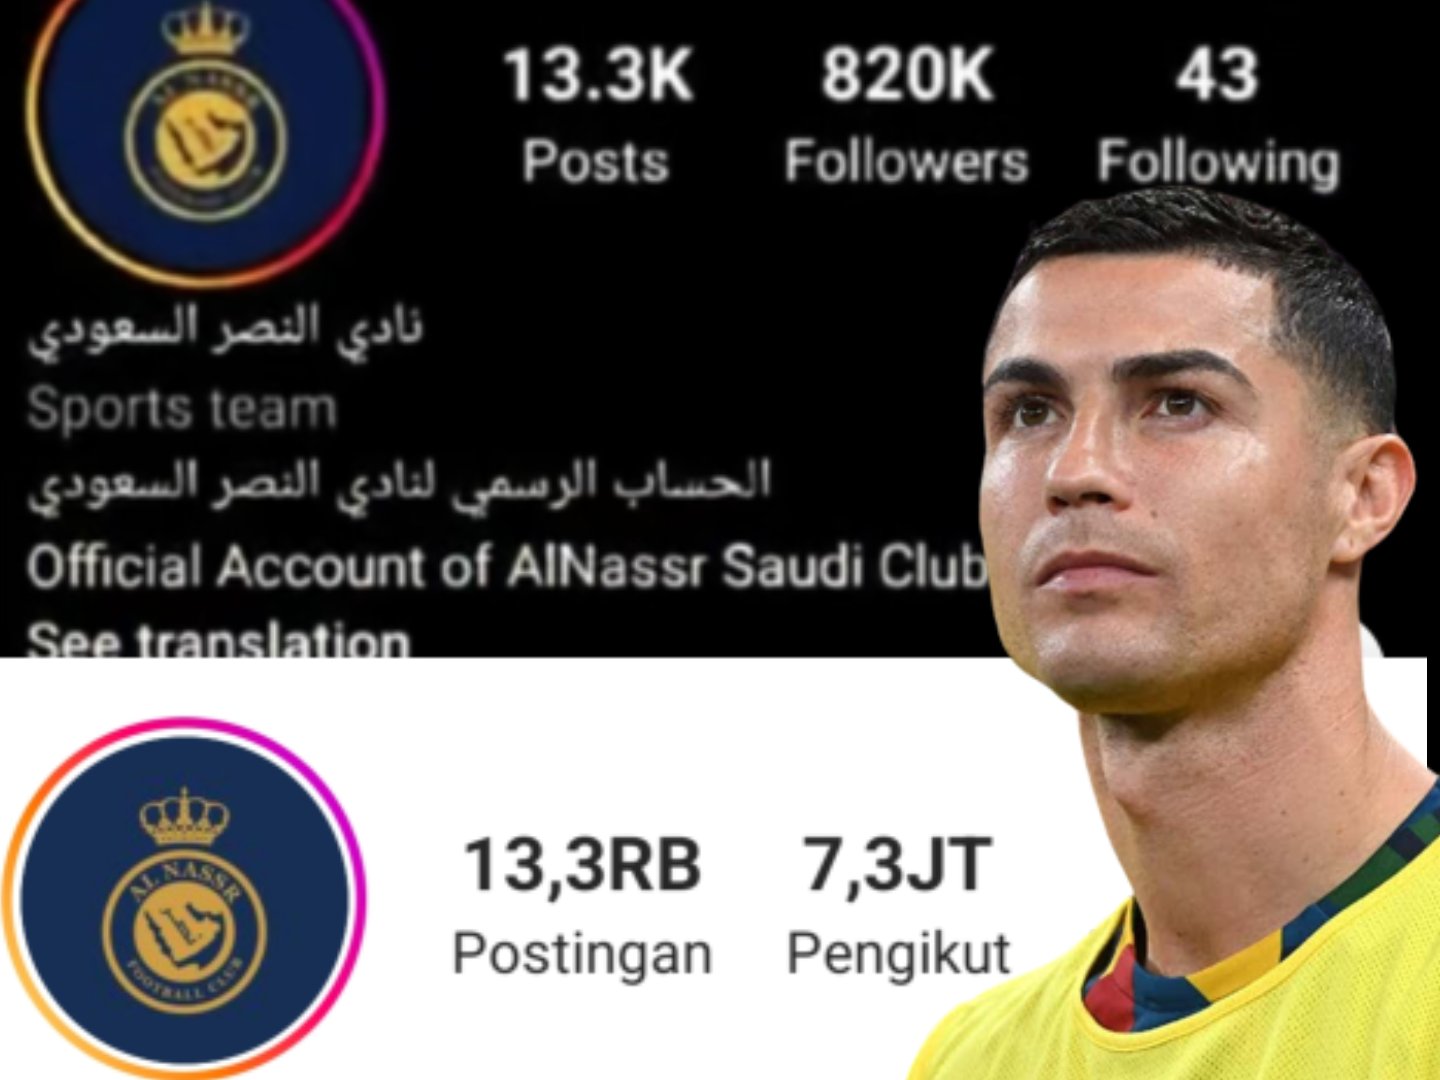 Luar Biasa, Karena Ronaldo Instagram Al Nassr Tembus 7,3 Juta Pengikut 